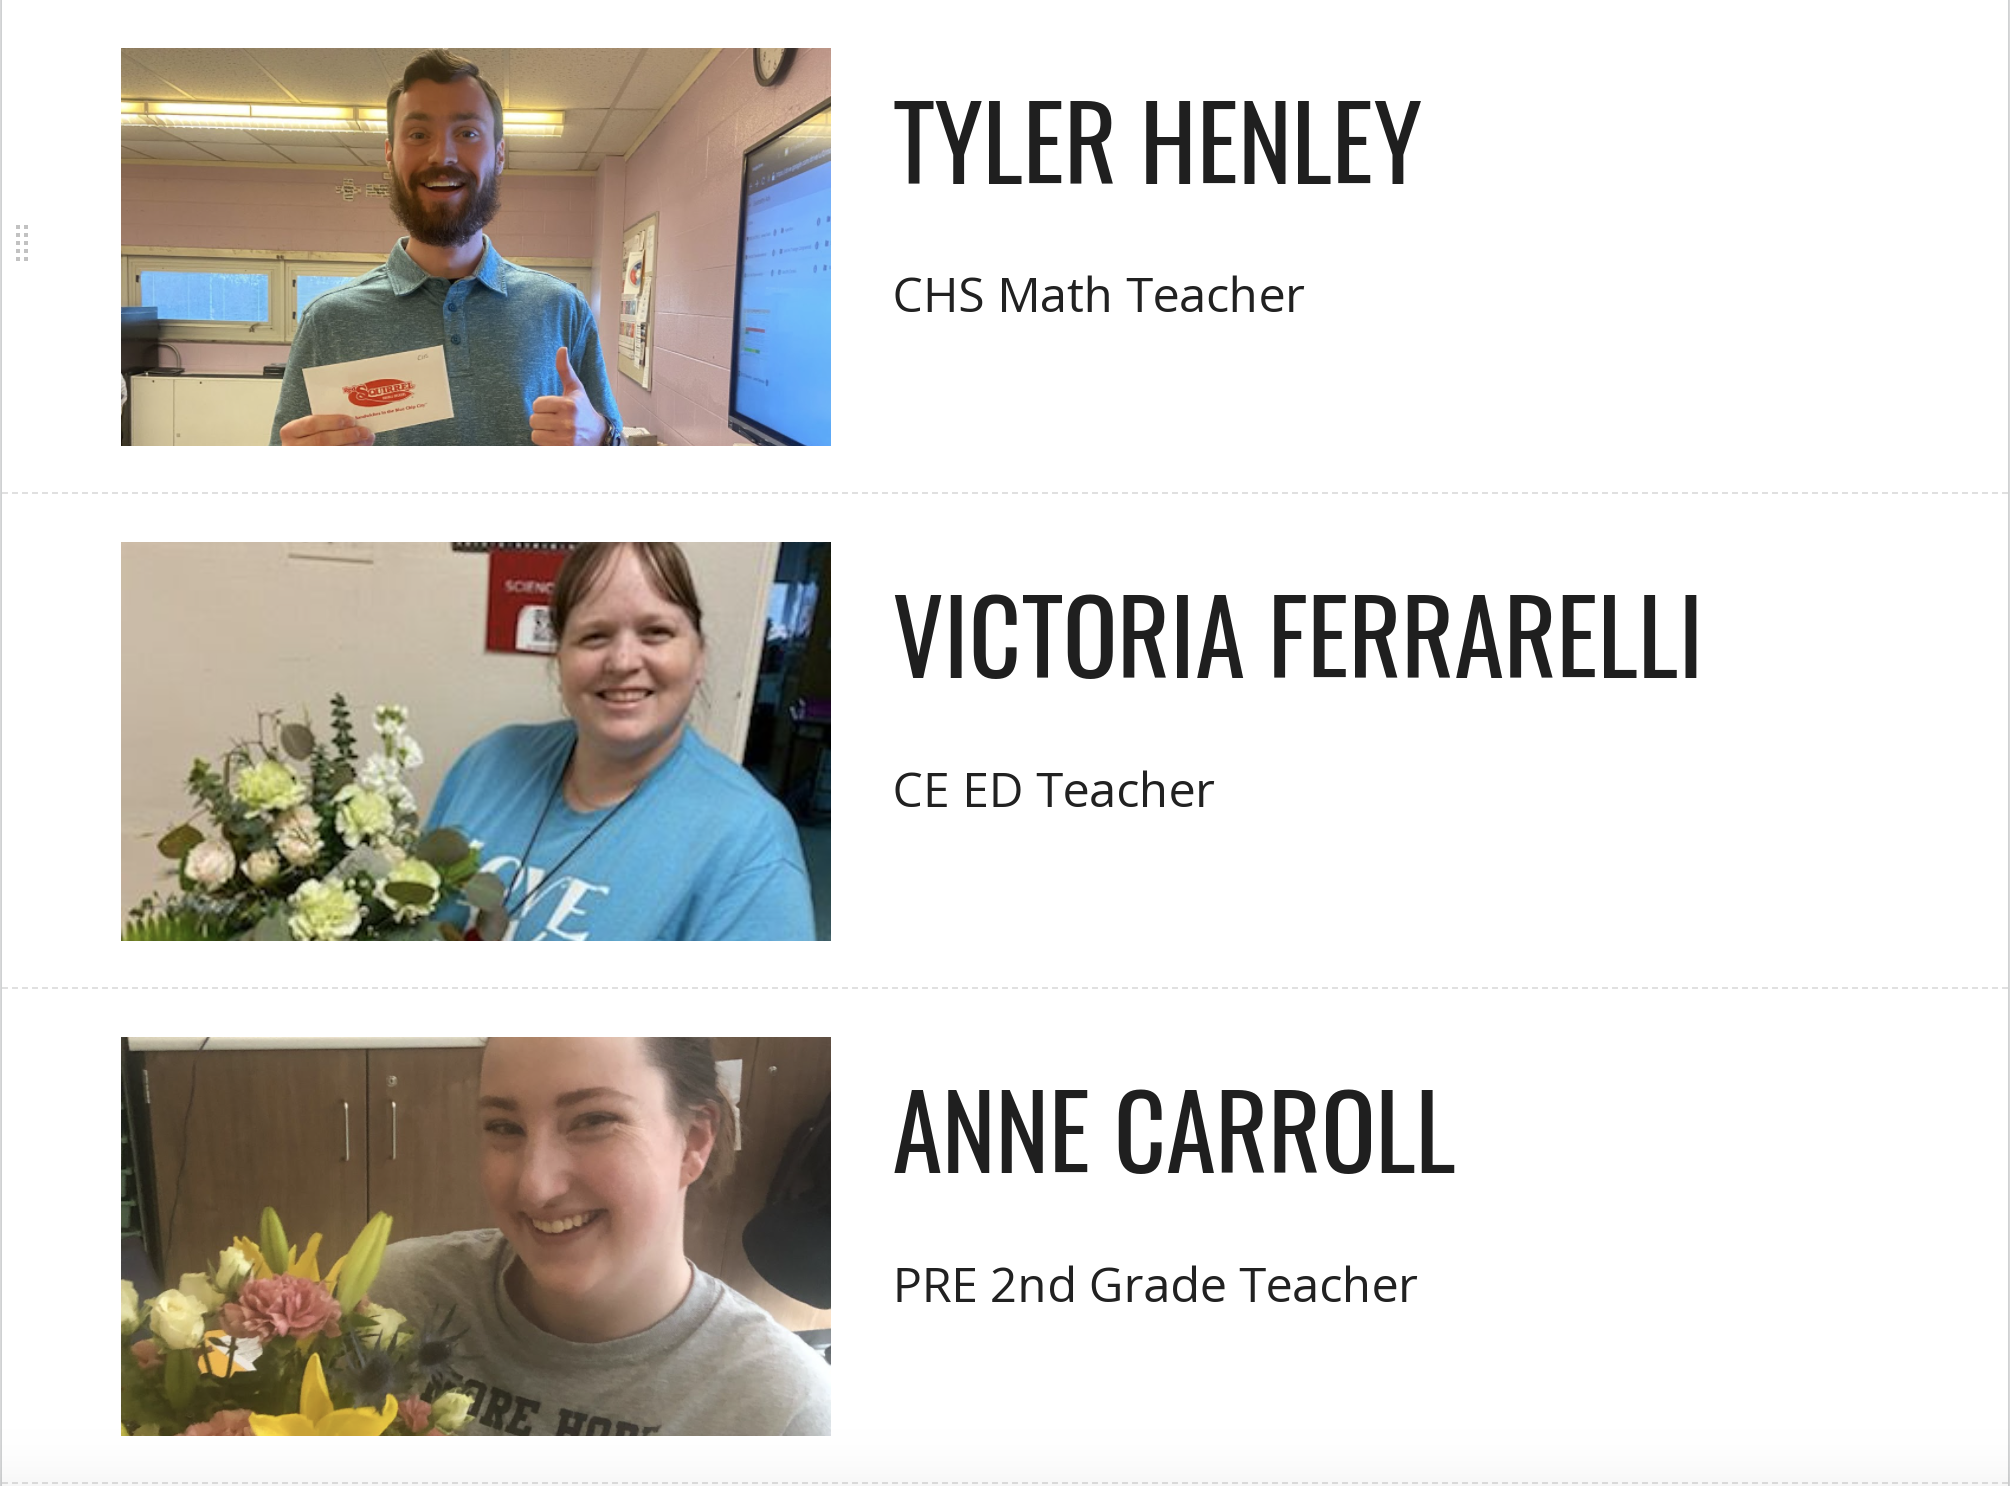 Tyler Henley, CHS Math Teacher; Victoria Ferrarelli, CE ED Teacher; Anne Carroll, PRE 2nd Grade Teacher